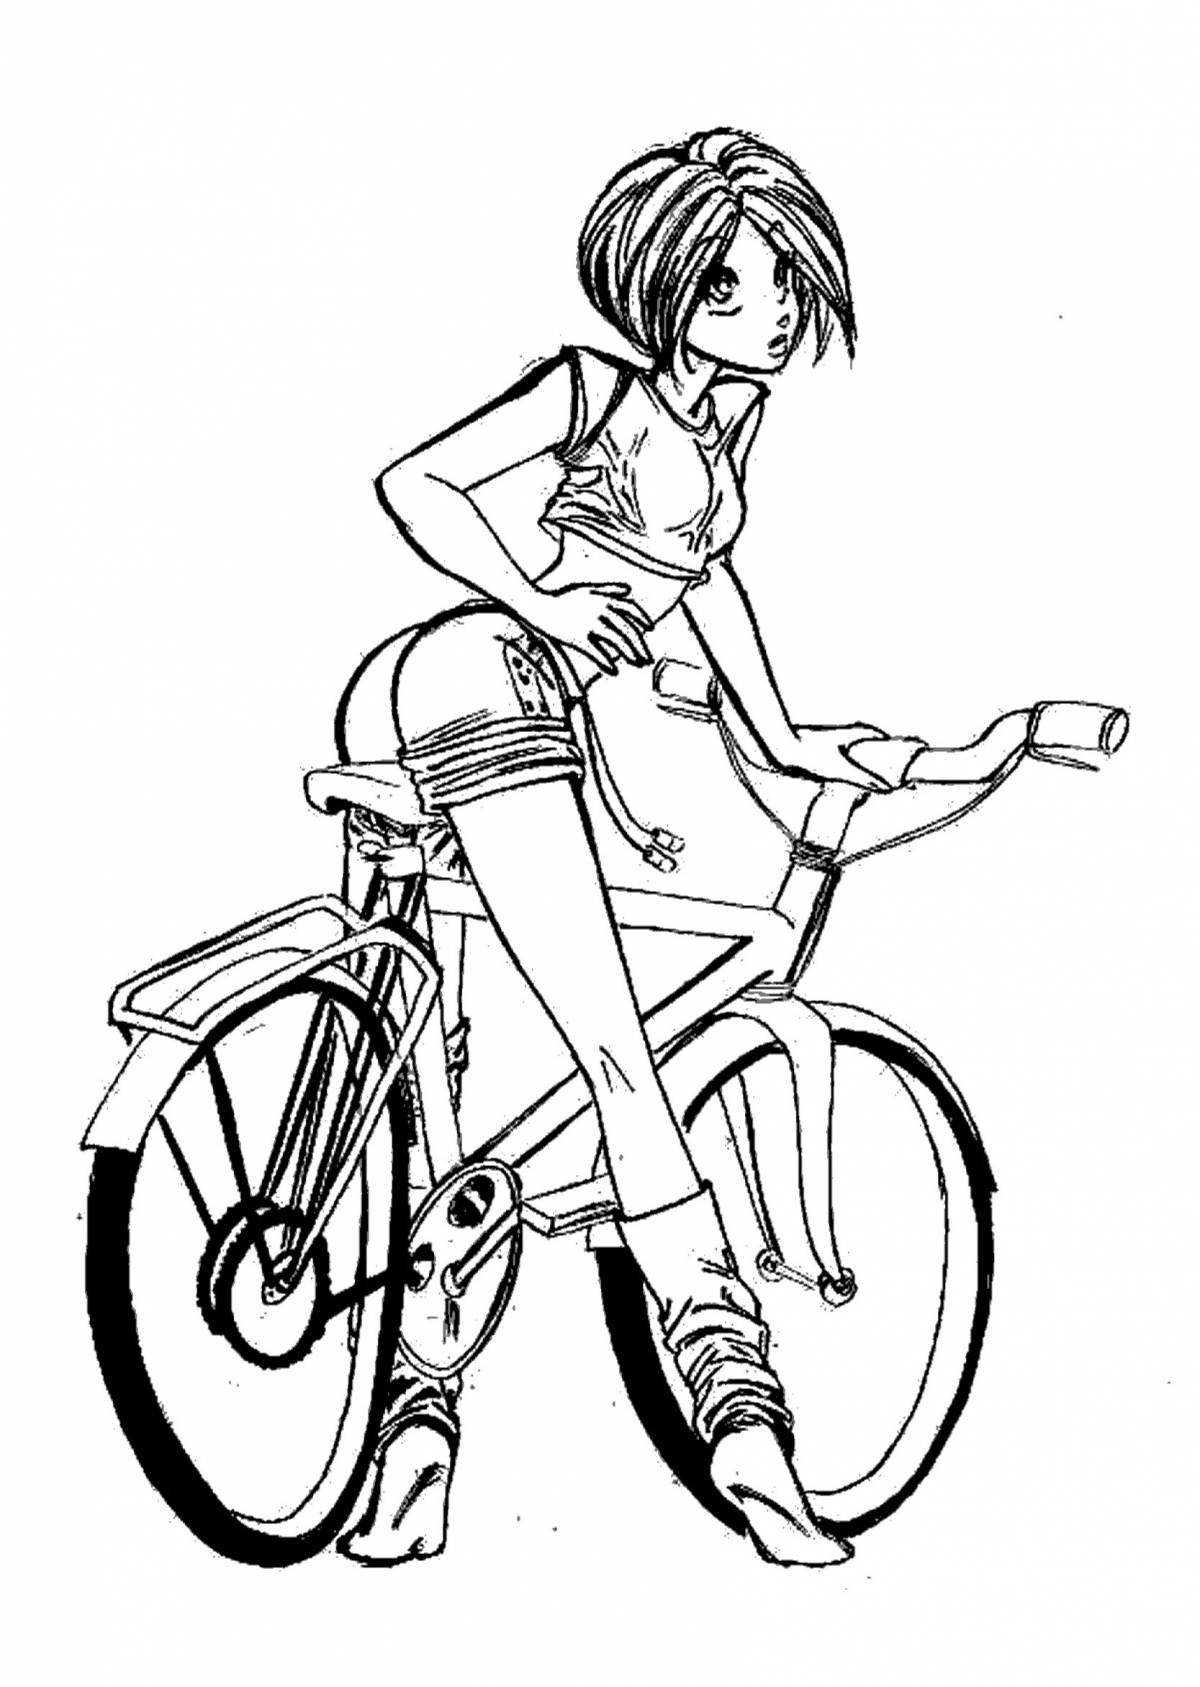 Bright girl on a bike